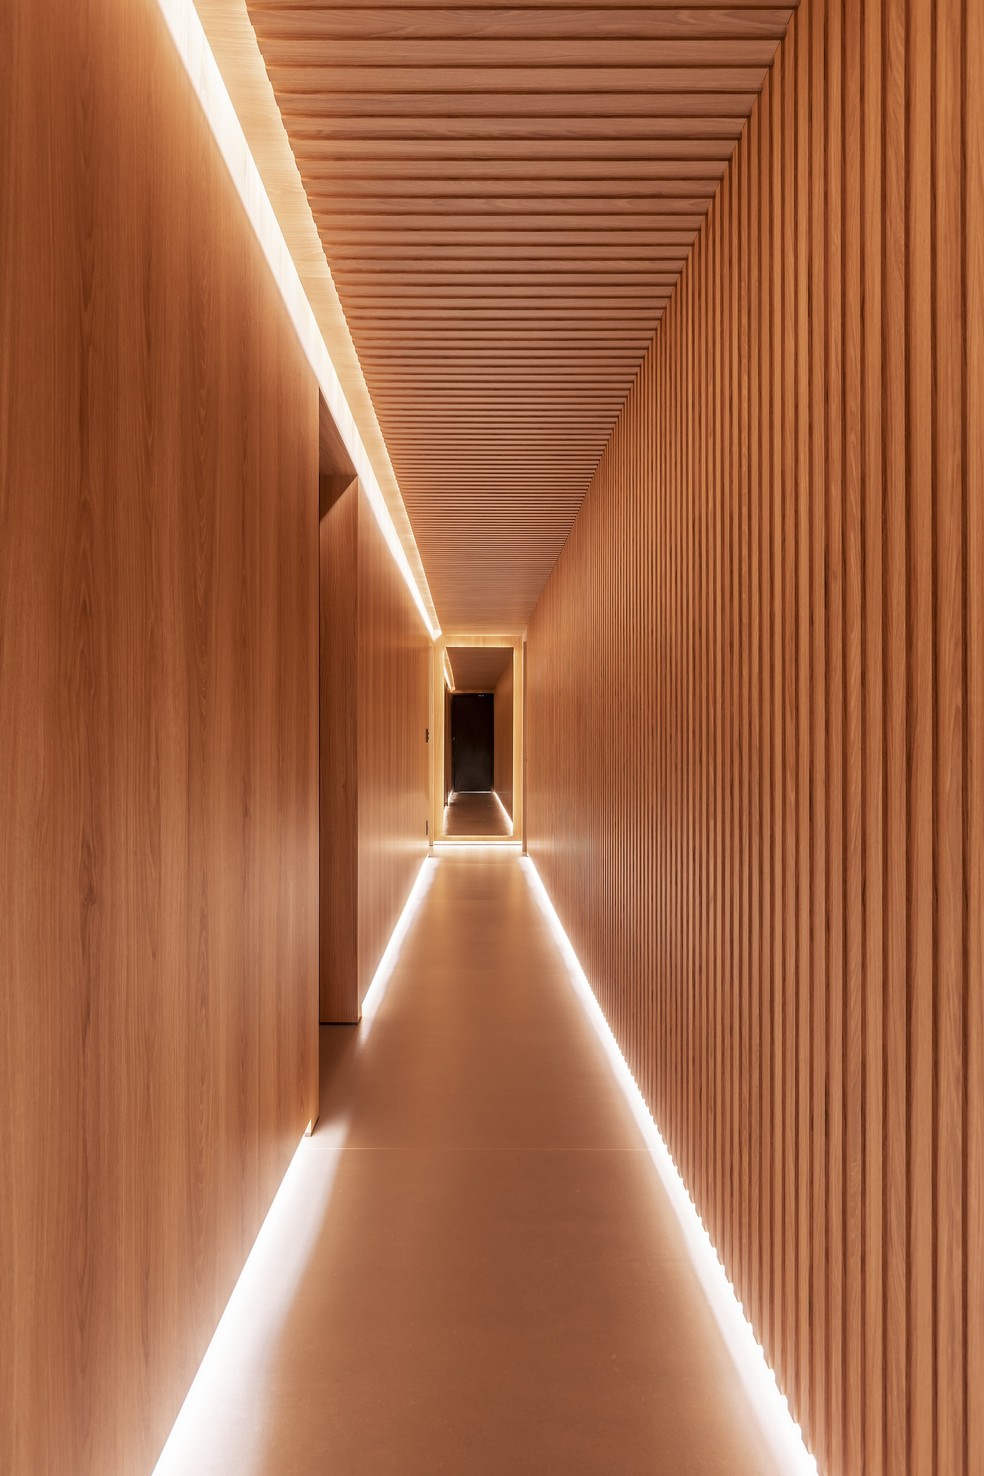 O corredor que dá acesso à área íntima tem uma atmosfera cênica — Foto: Rafael Renzo